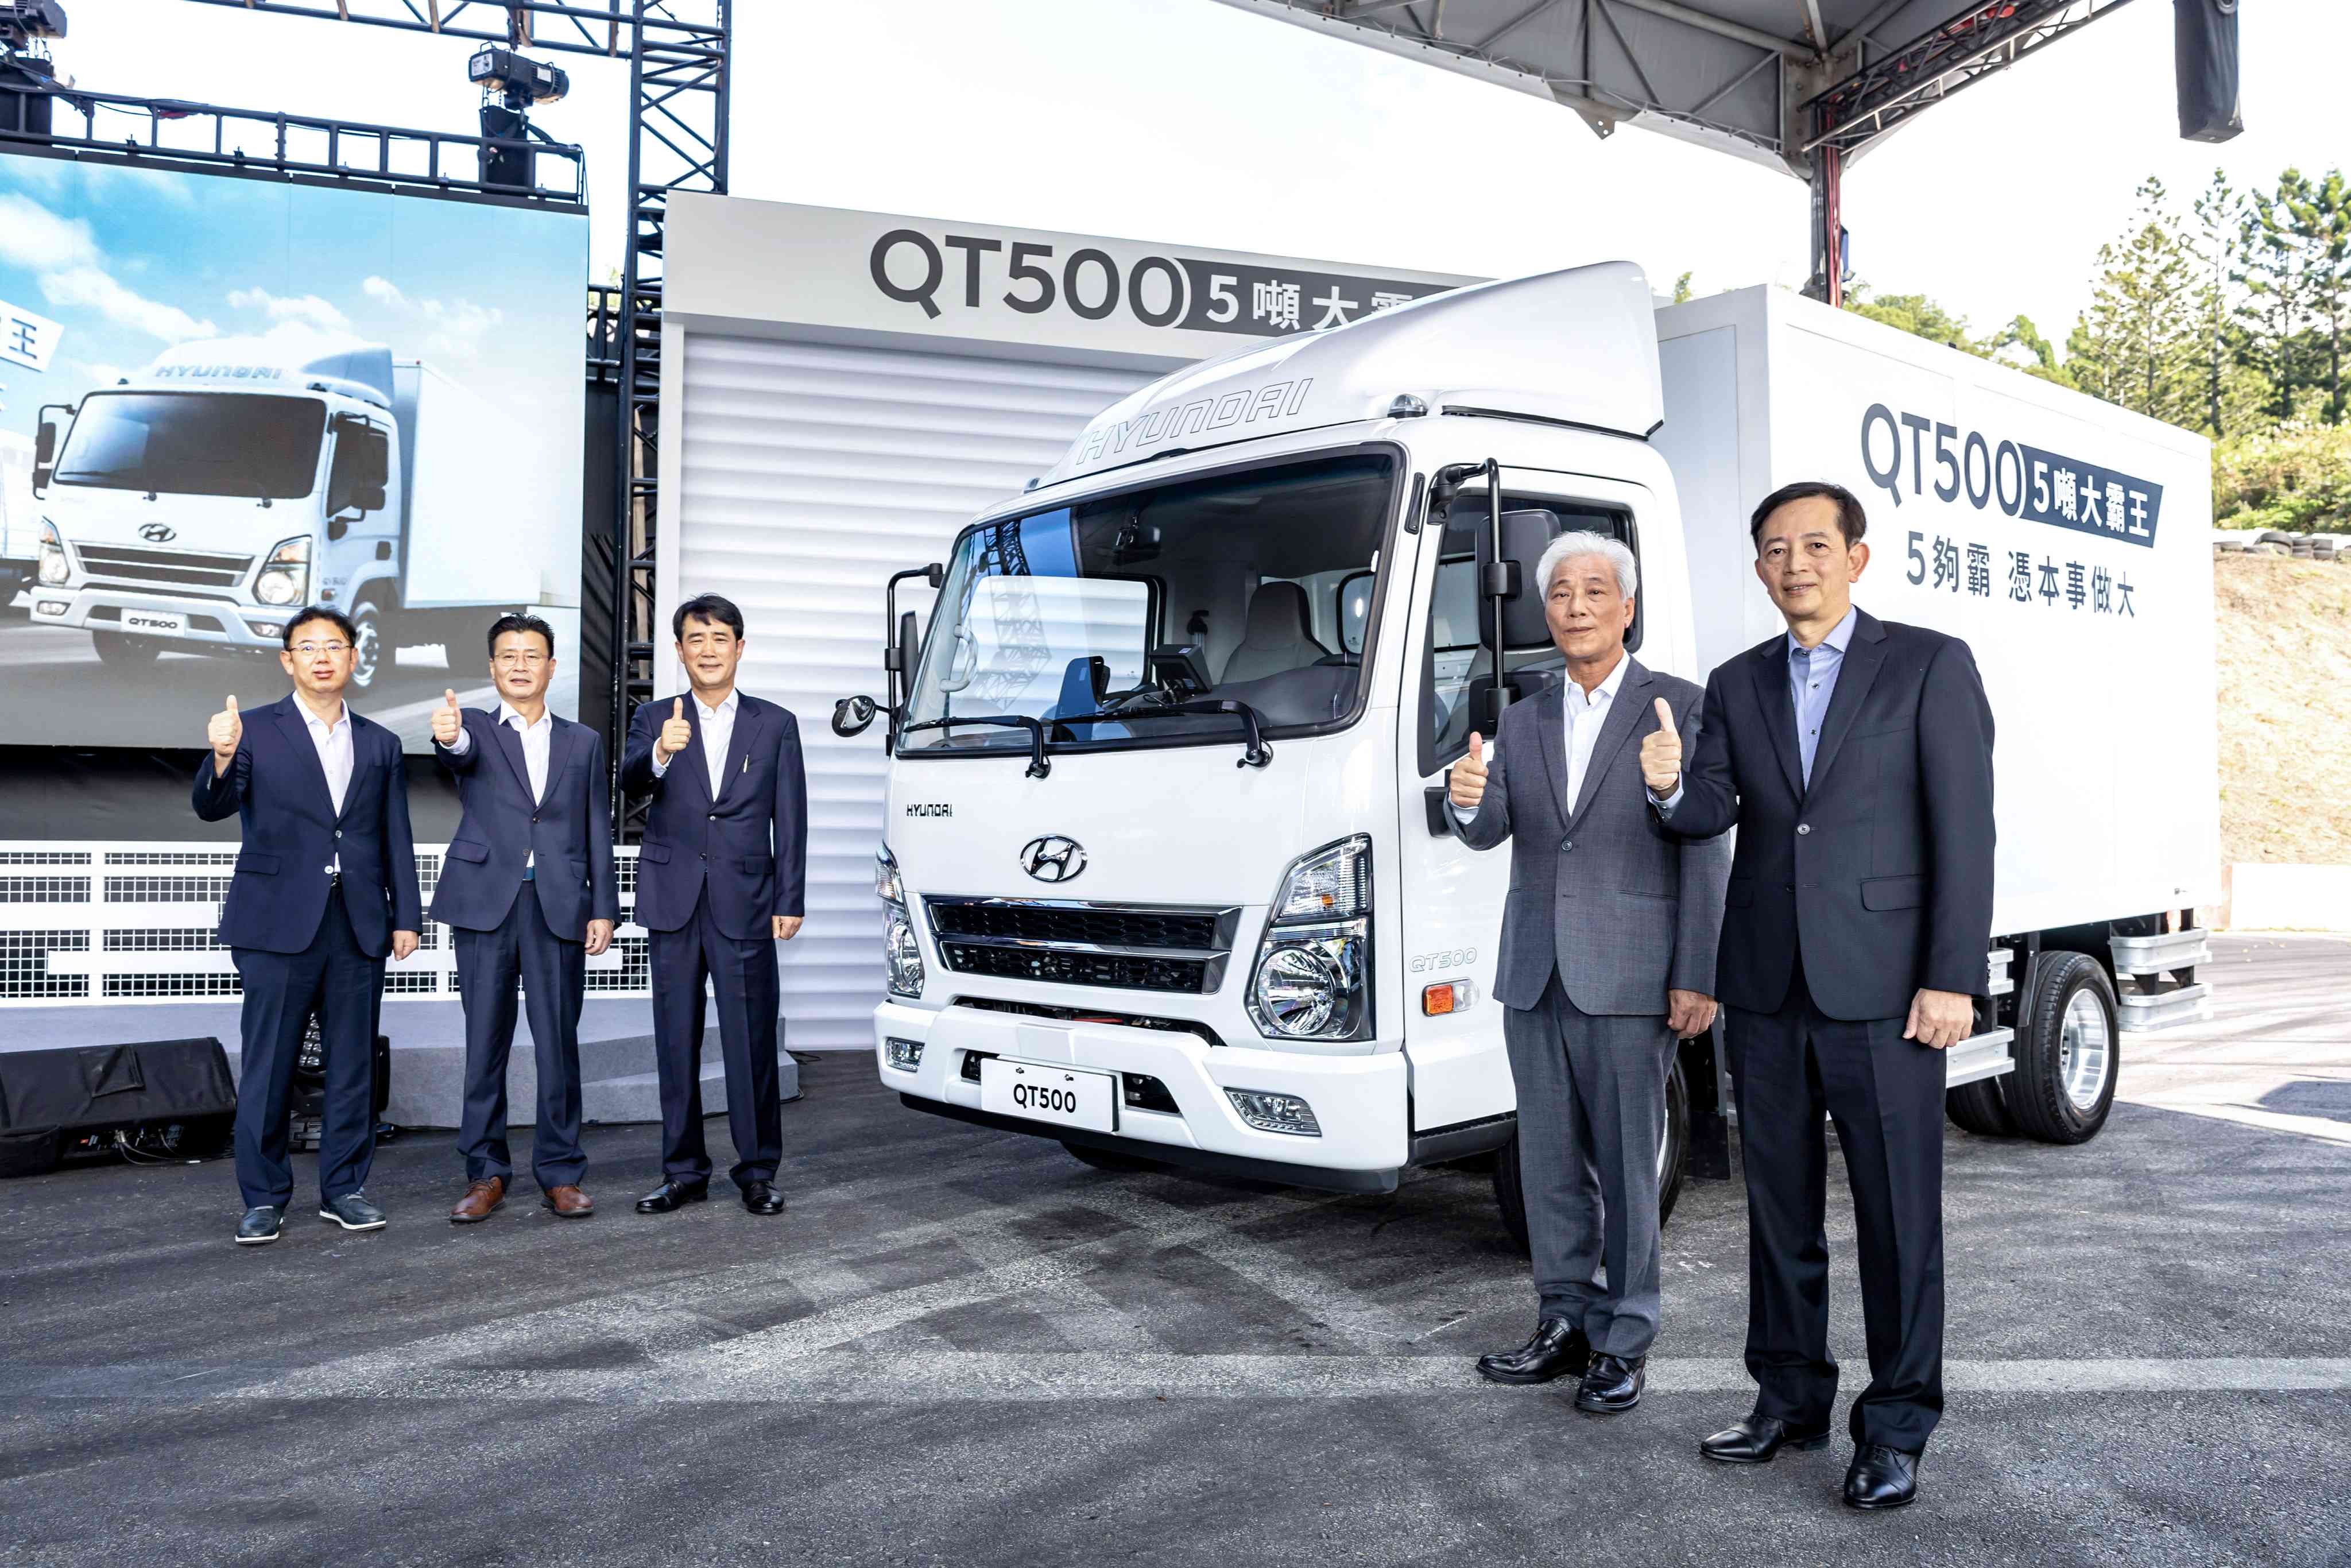 生意做大全能幫手 五噸商用車新勢力HYUNDAI QT500大霸王霸氣登場